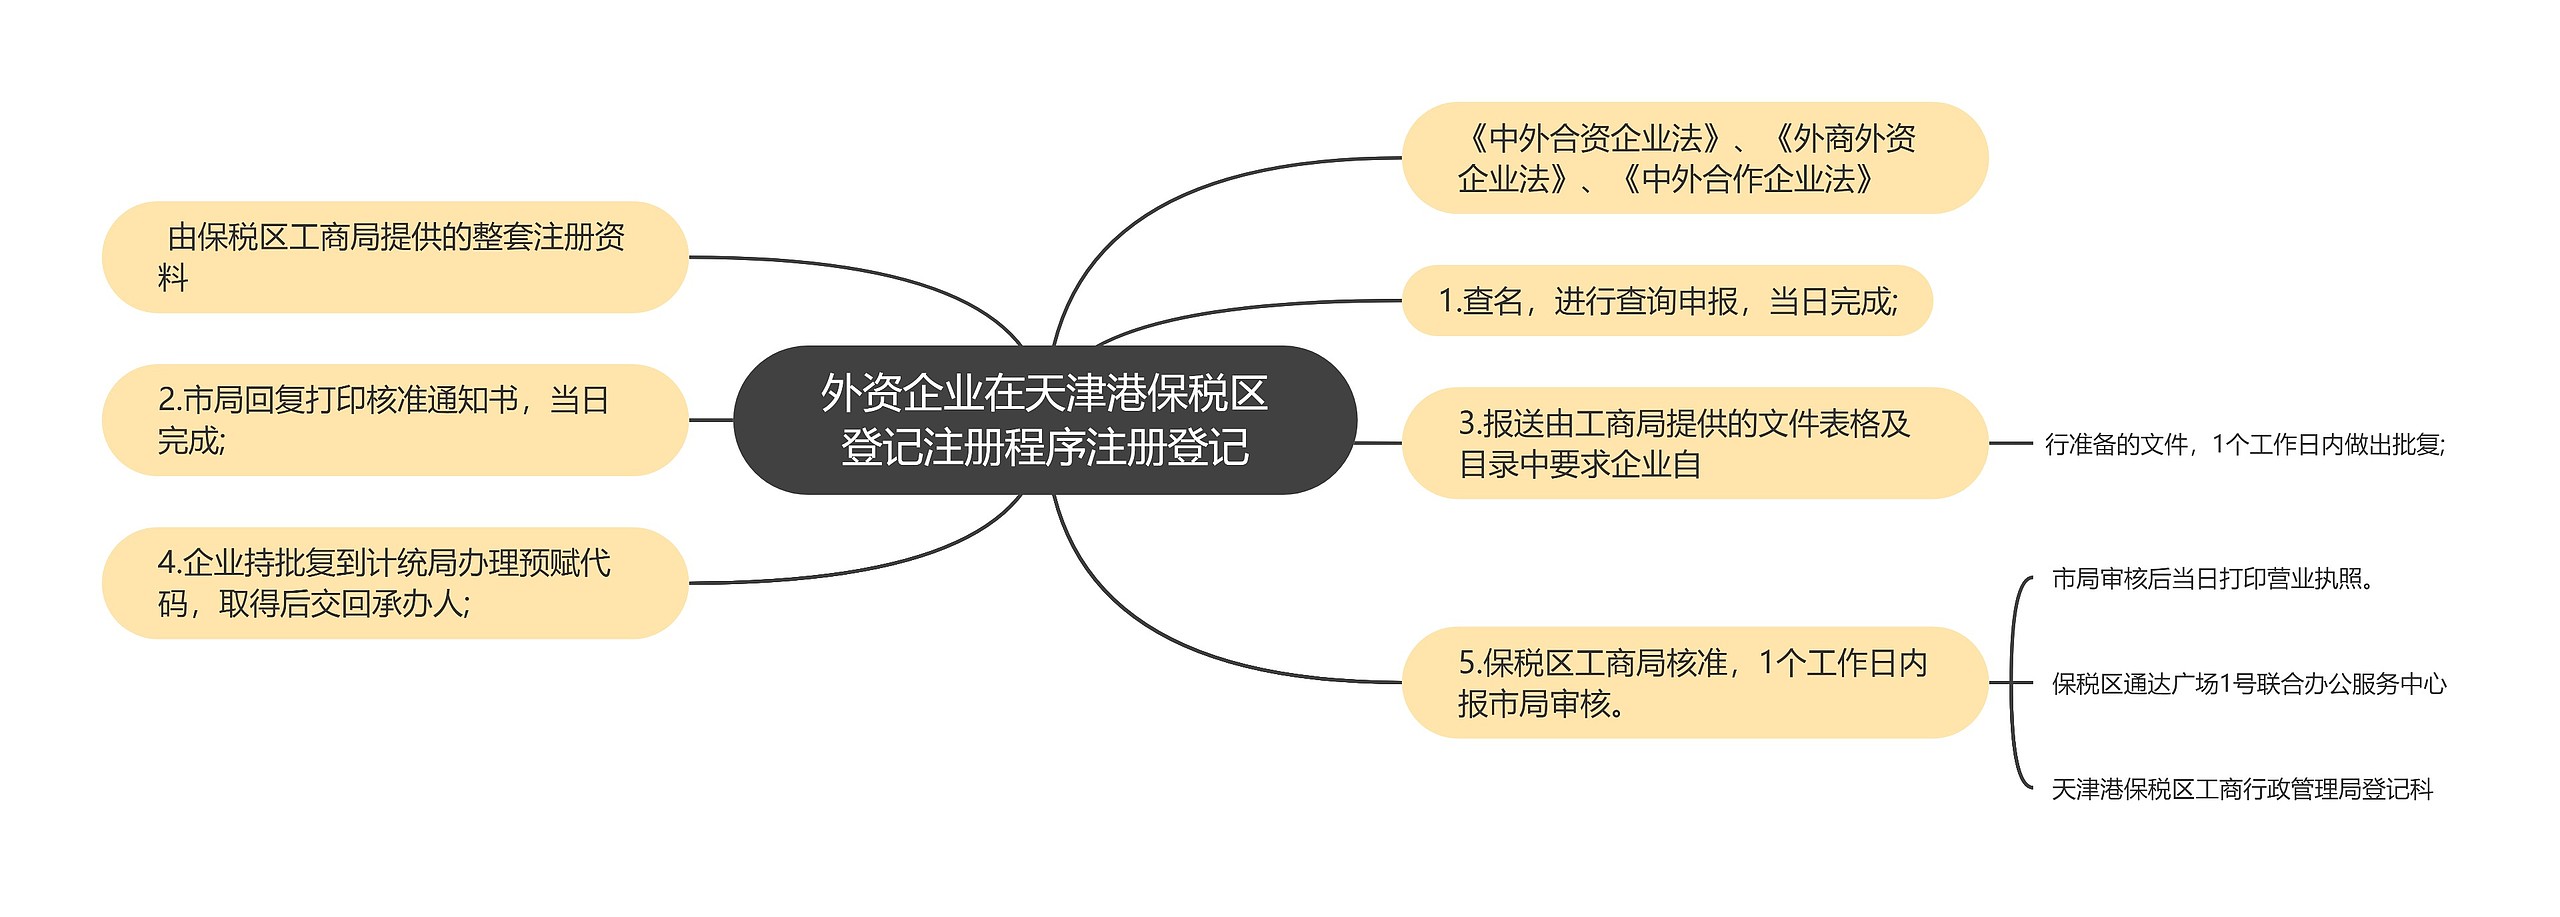 外资企业在天津港保税区登记注册程序注册登记